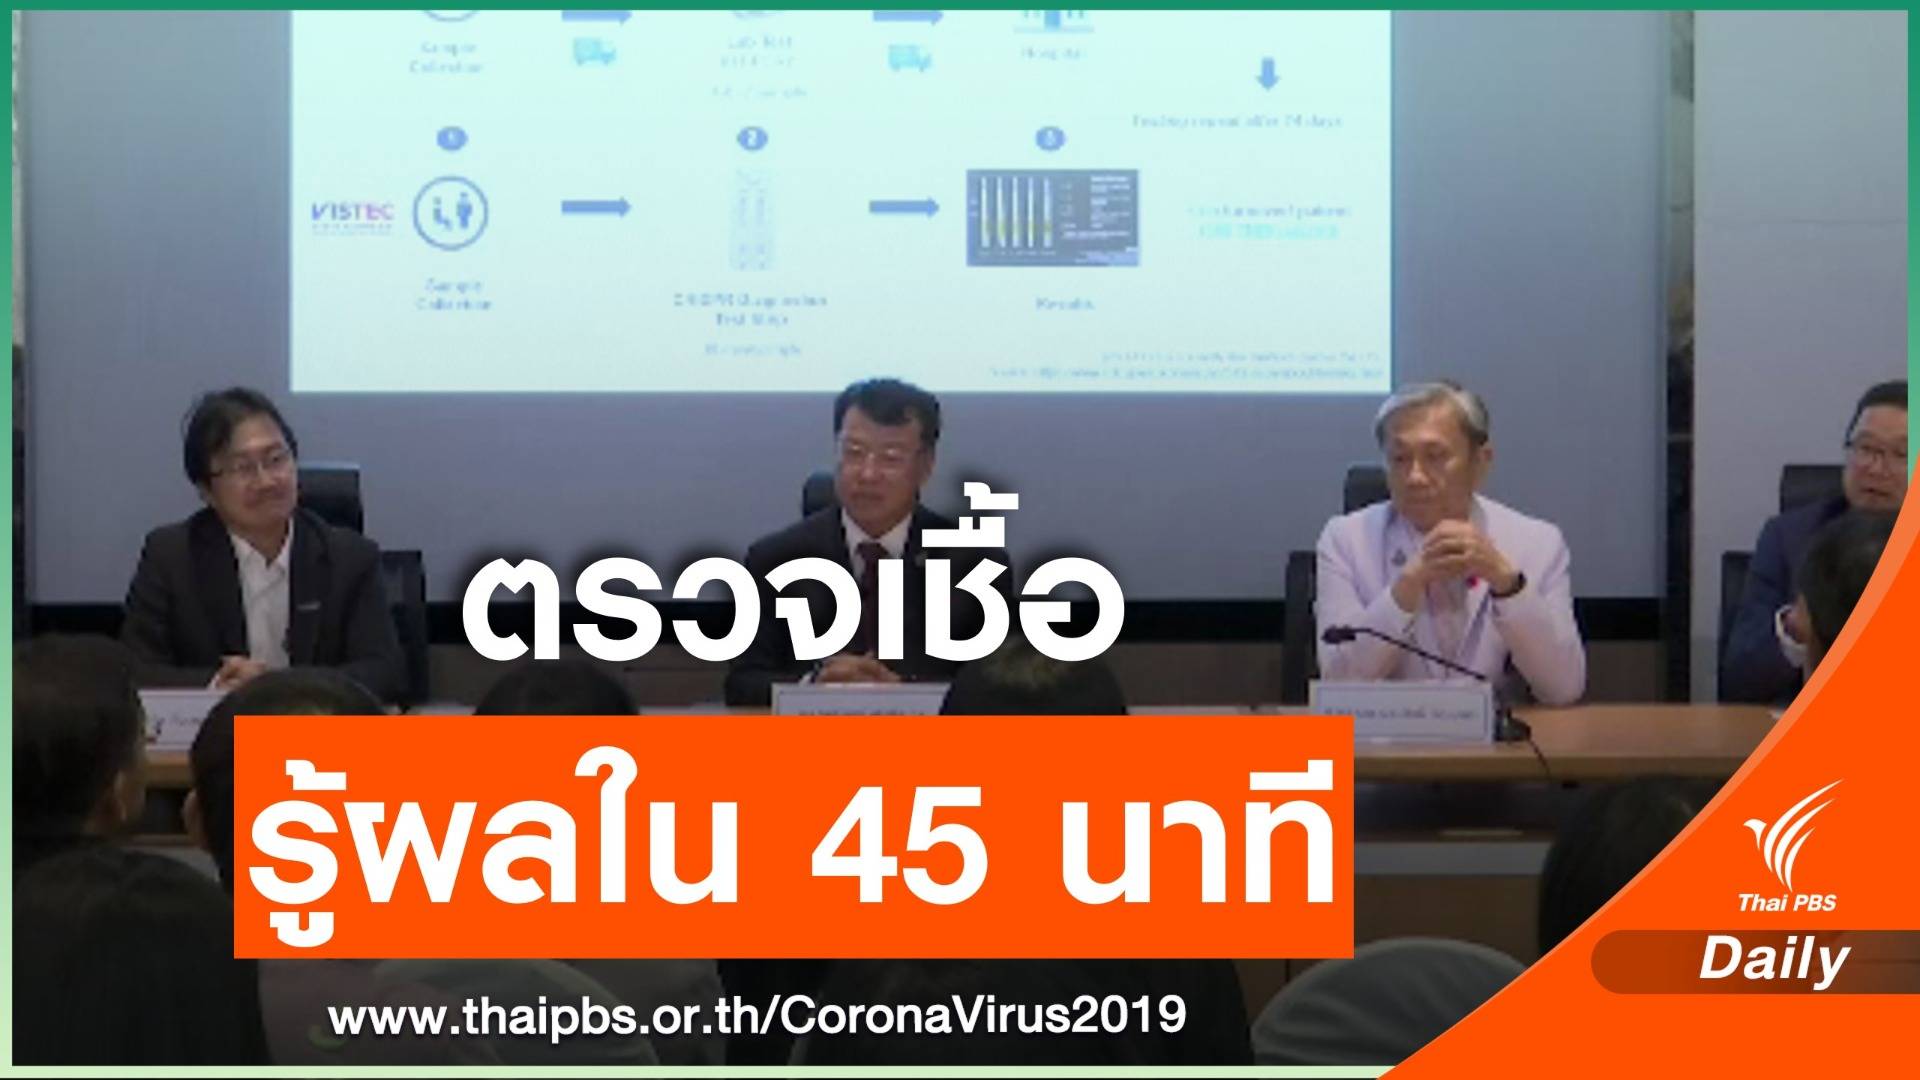 ข่าวดี! นักวิจัยไทยพัฒนาชุดตรวจ COVID-19 รู้ผลภายใน 45 นาที